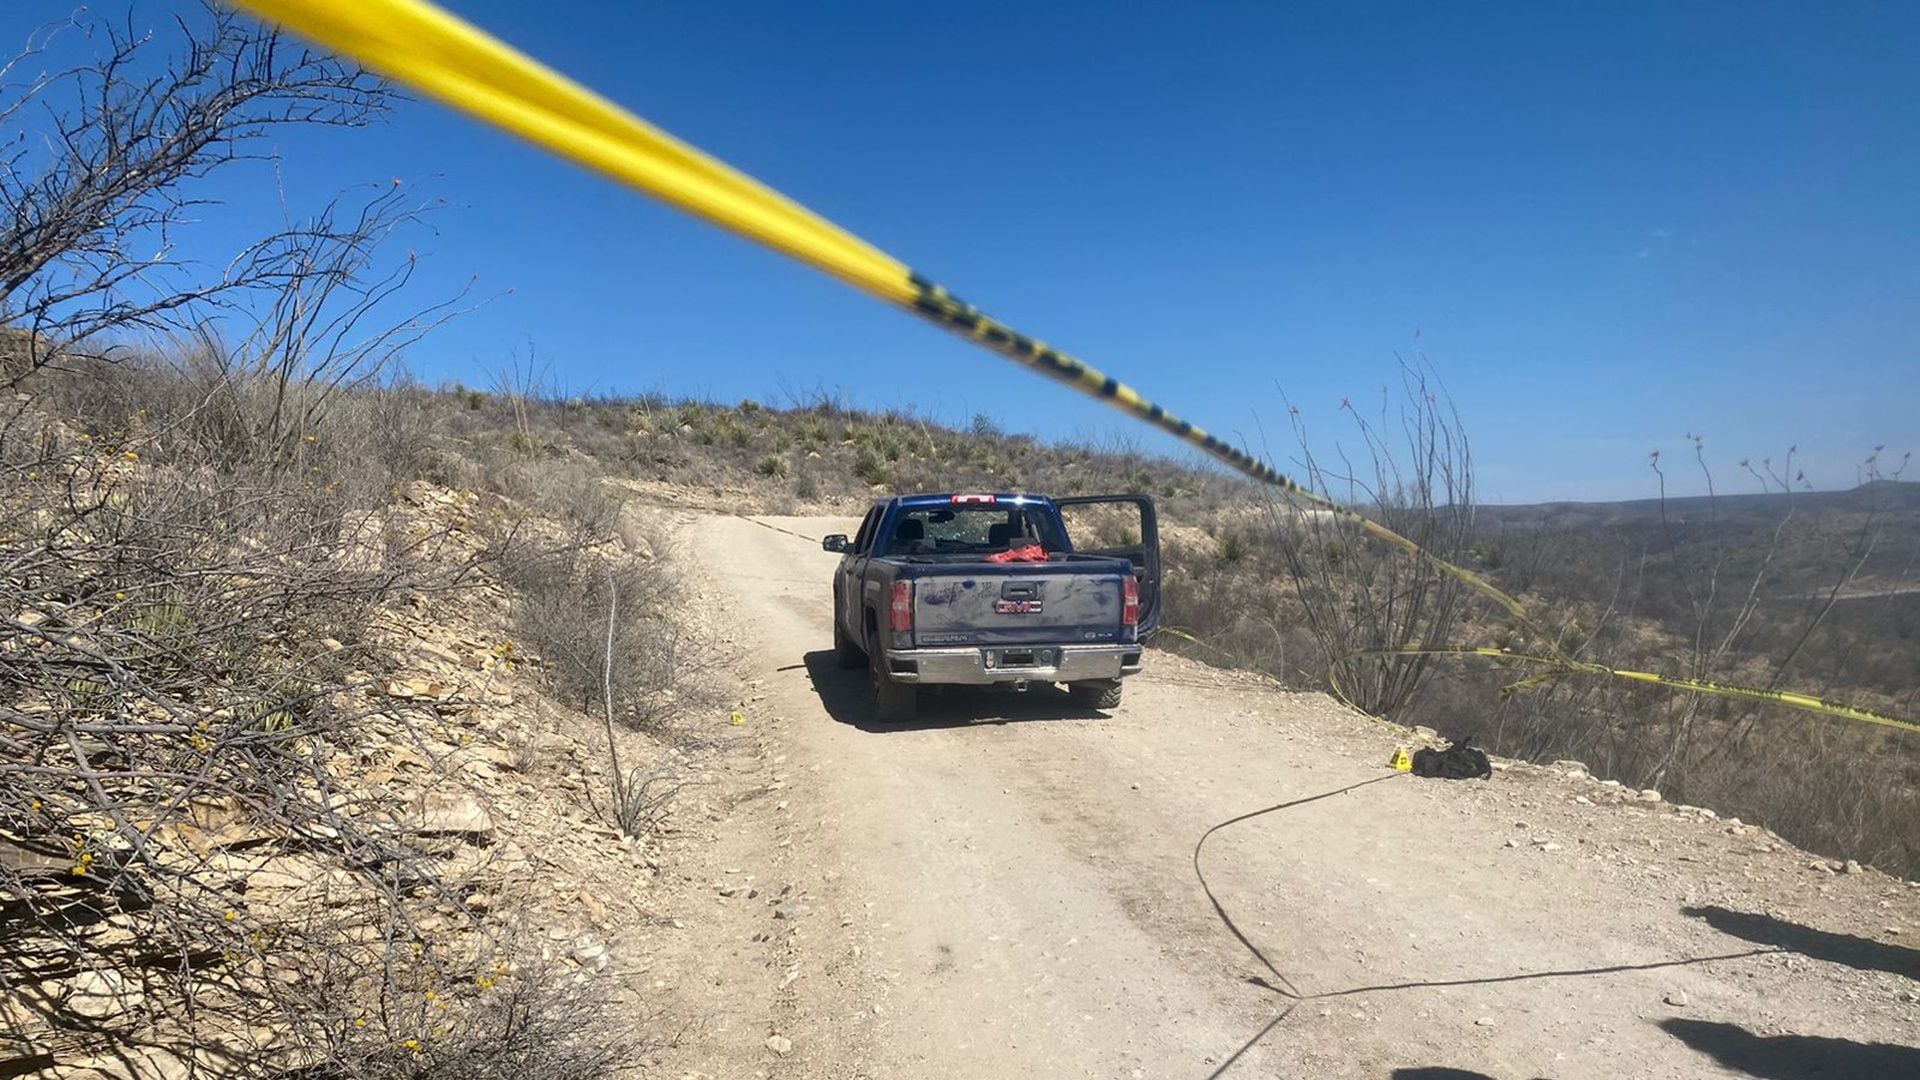 Balacera deja tres muertos y dos heridos en Valle de Zaragoza, Chihuahua